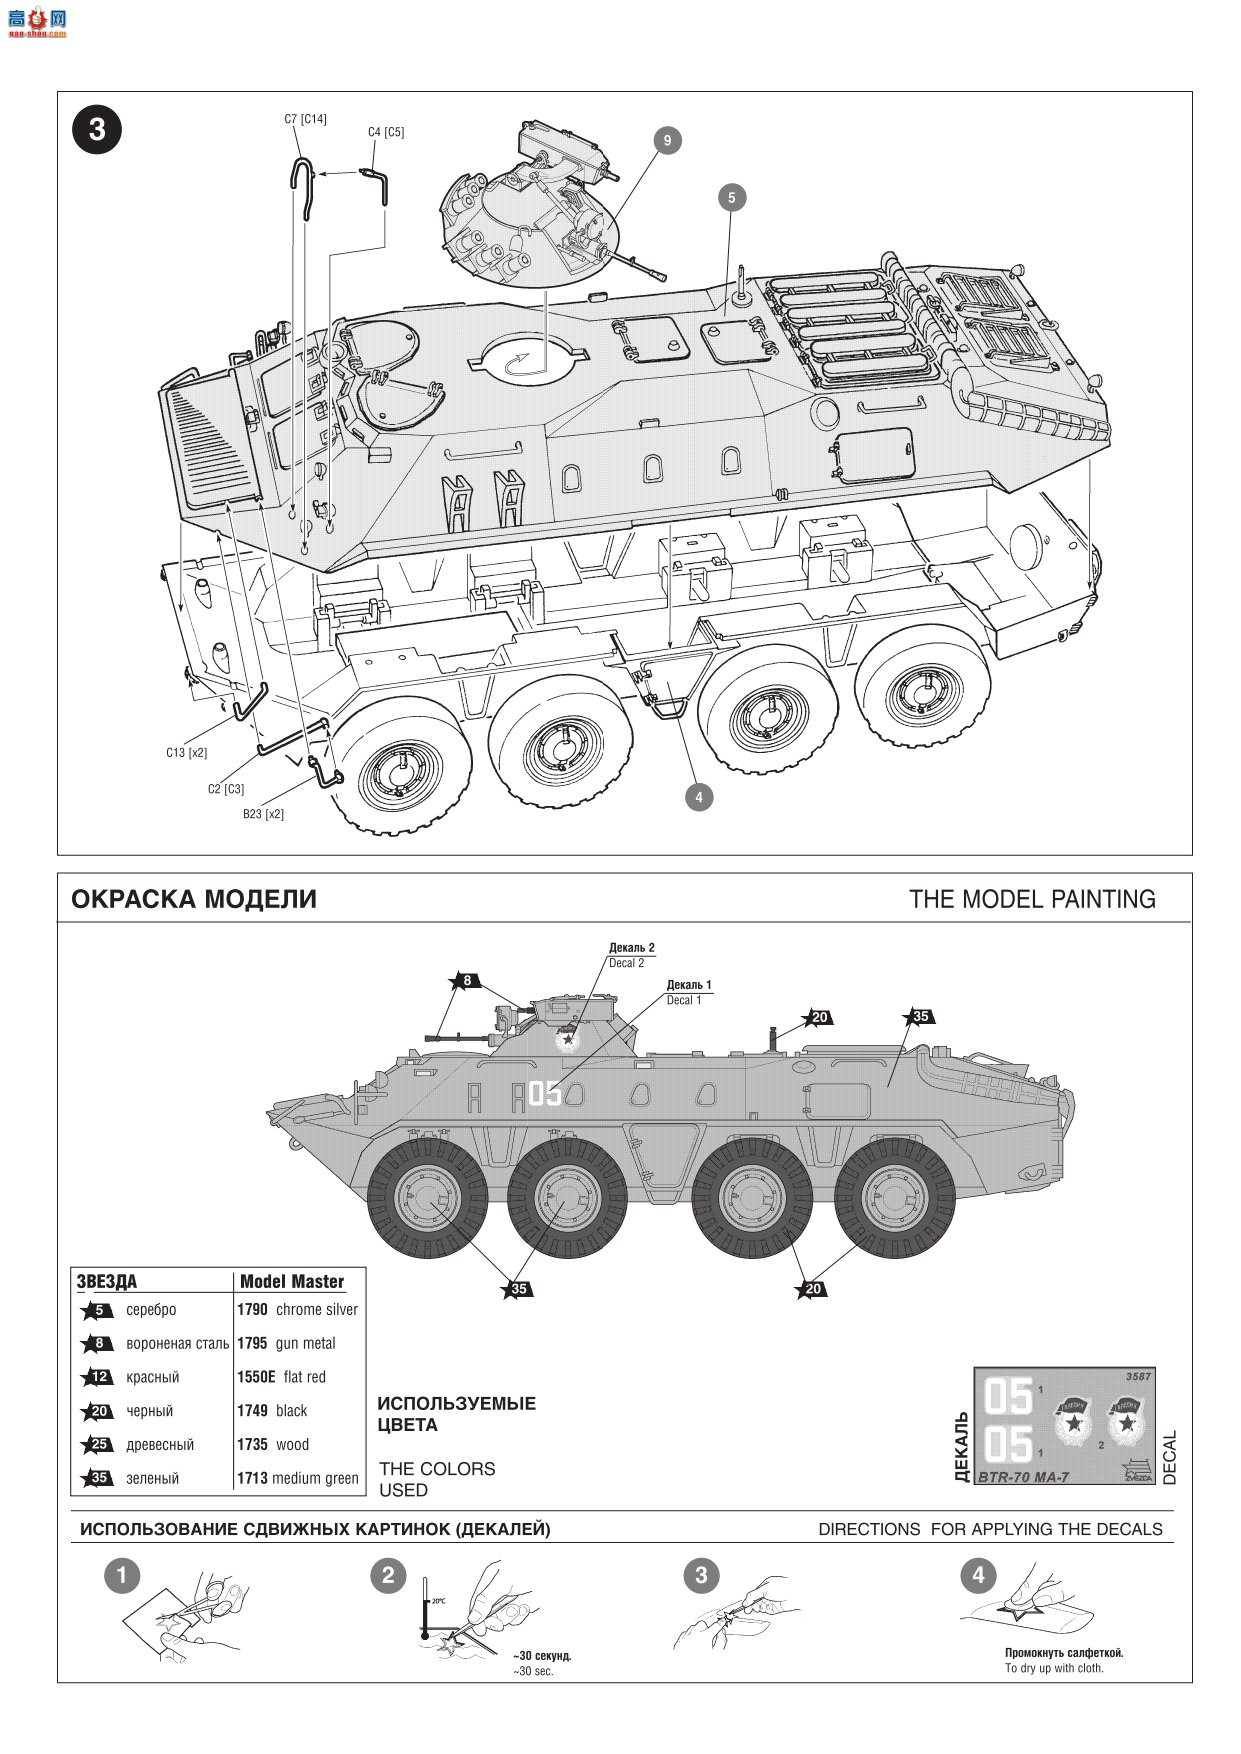  װ׳ 3587  MA-7 Ķ˹װ˱ BTR-70